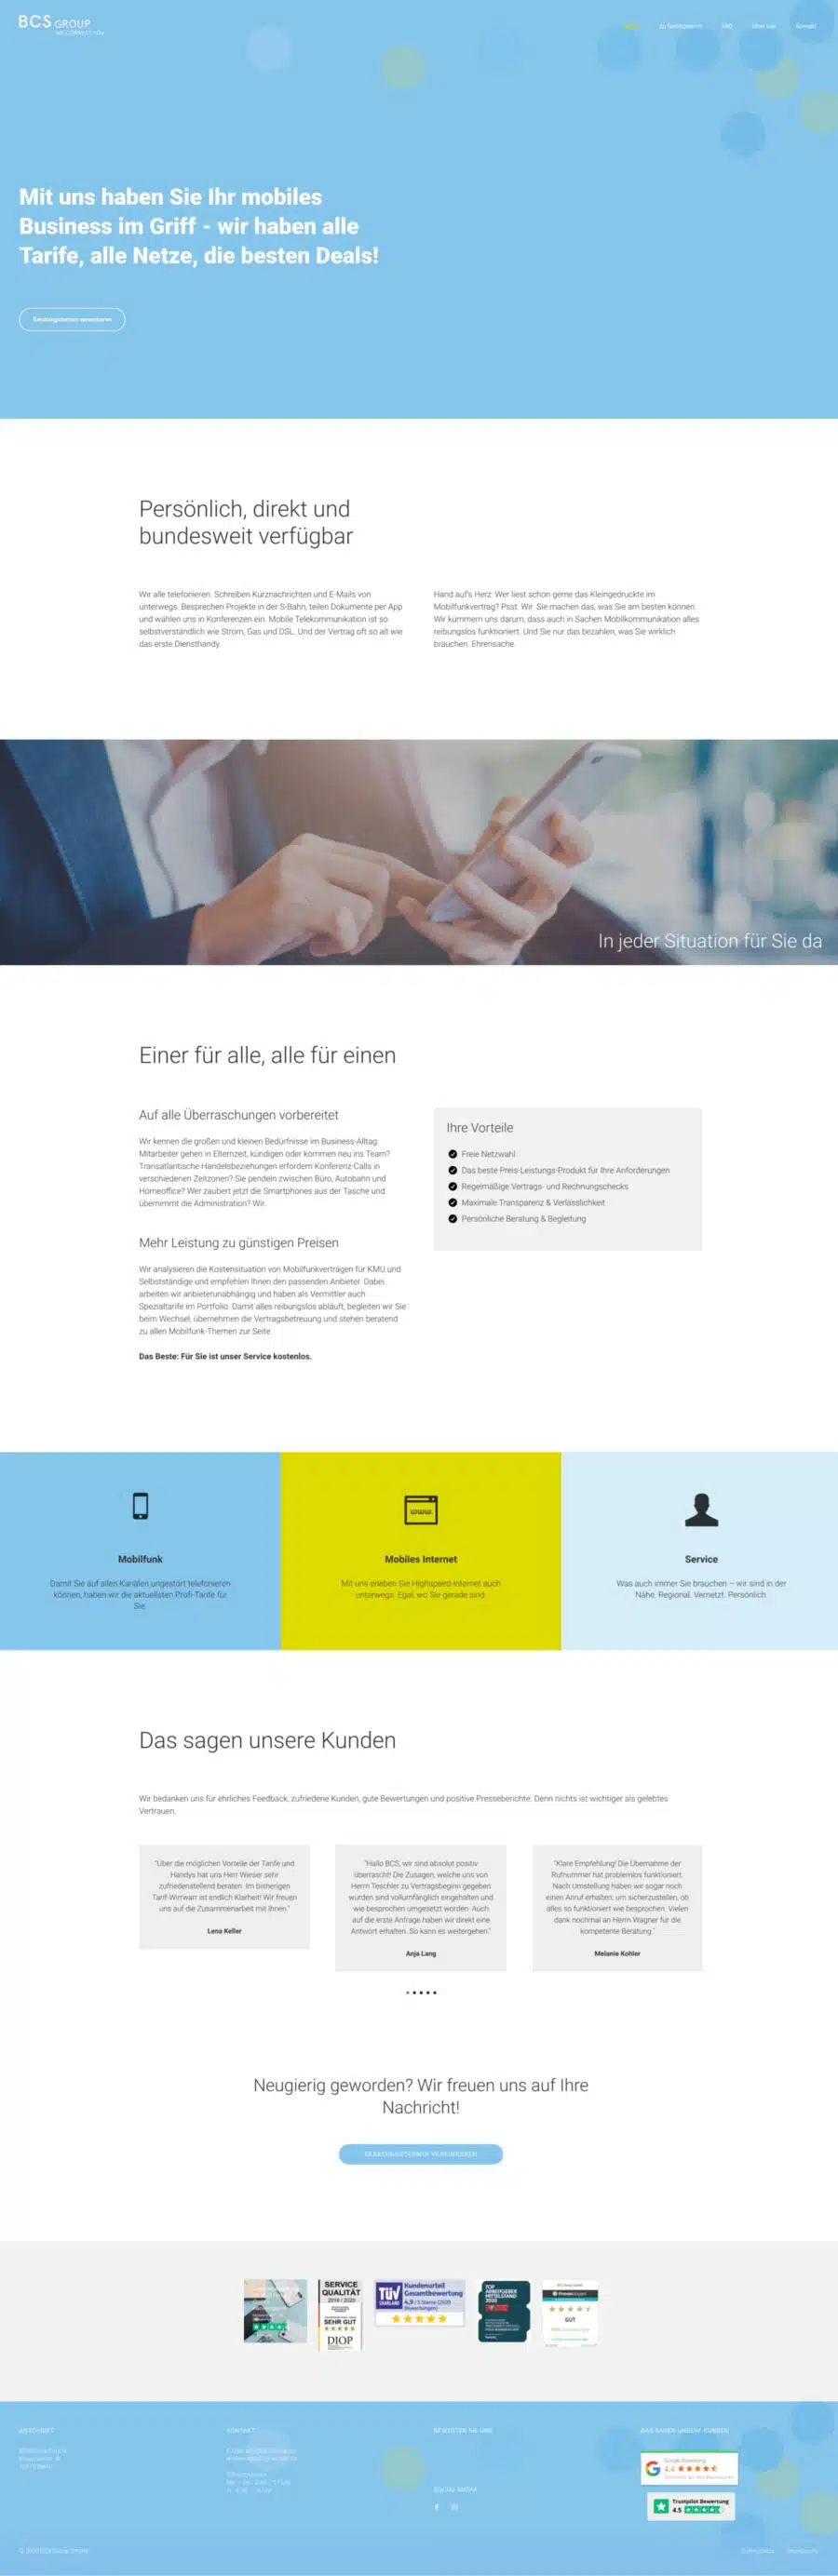 Webdesign München für Firmenwebsite